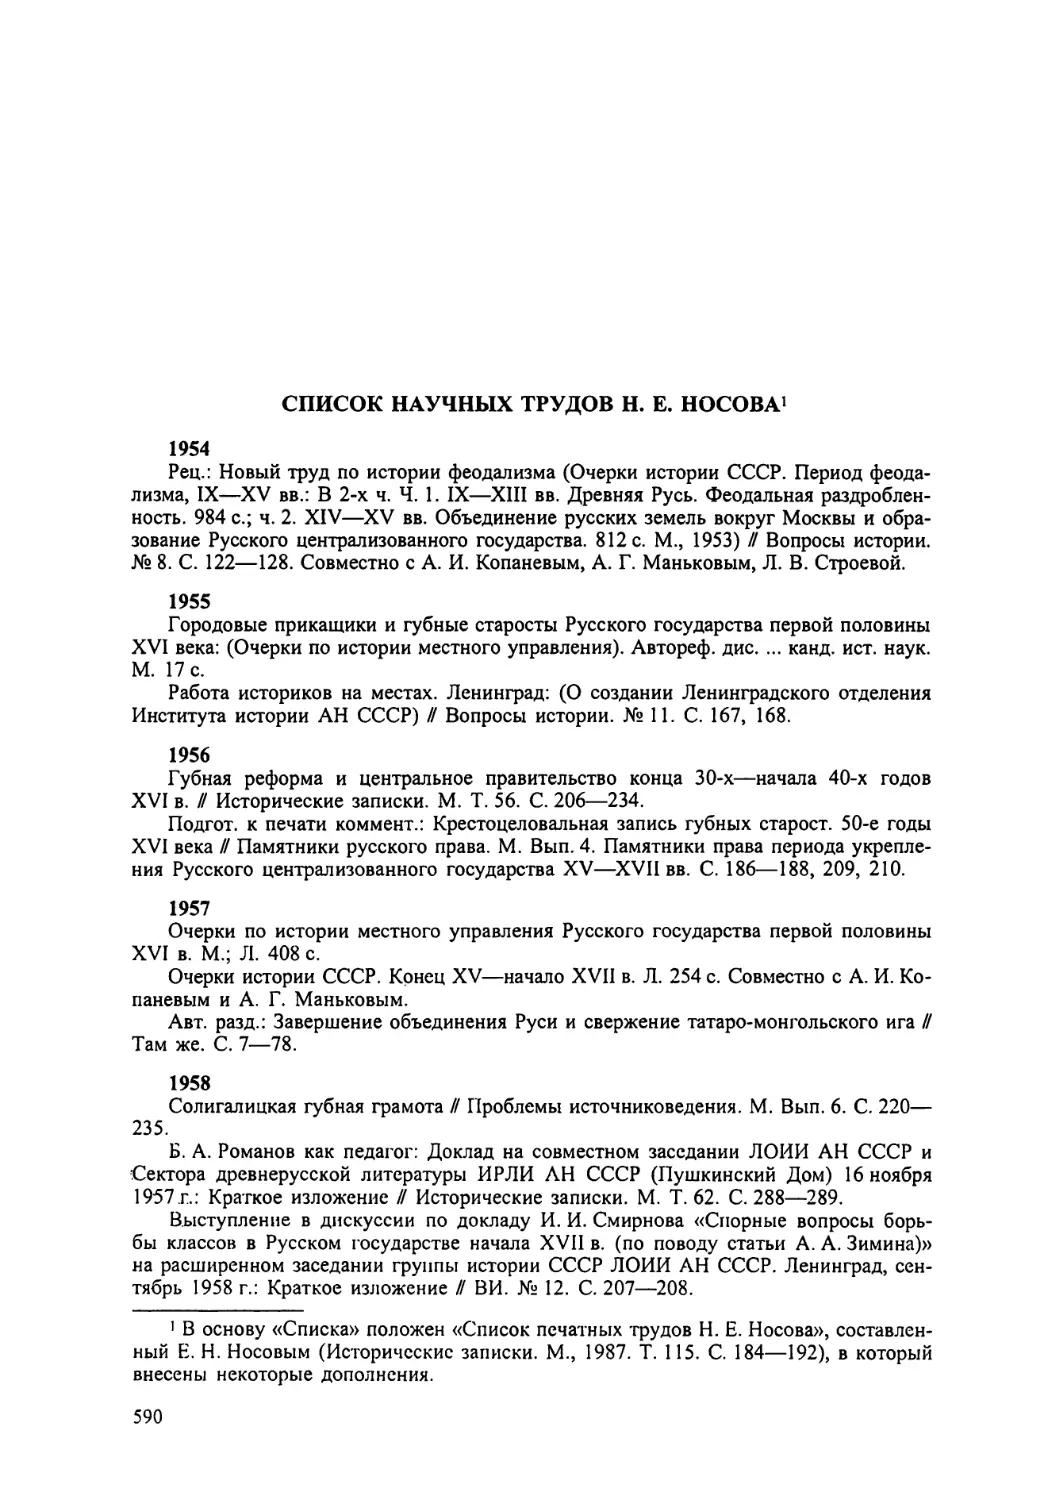 Список научных трудов Н.Е. Носова